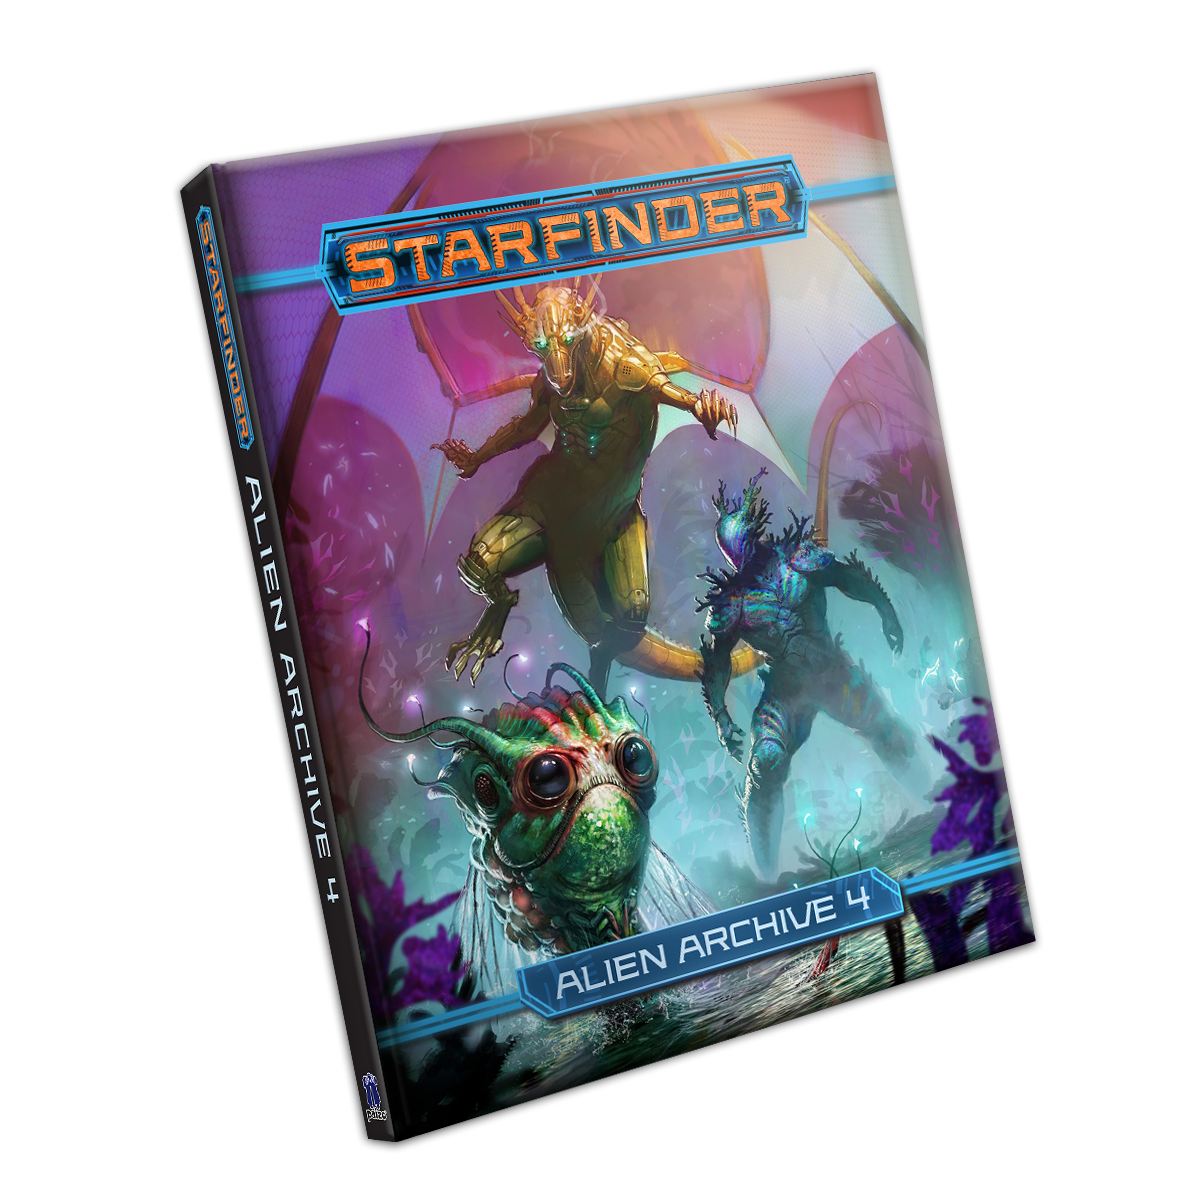 Alien Archive 4 - Starfinder RPG